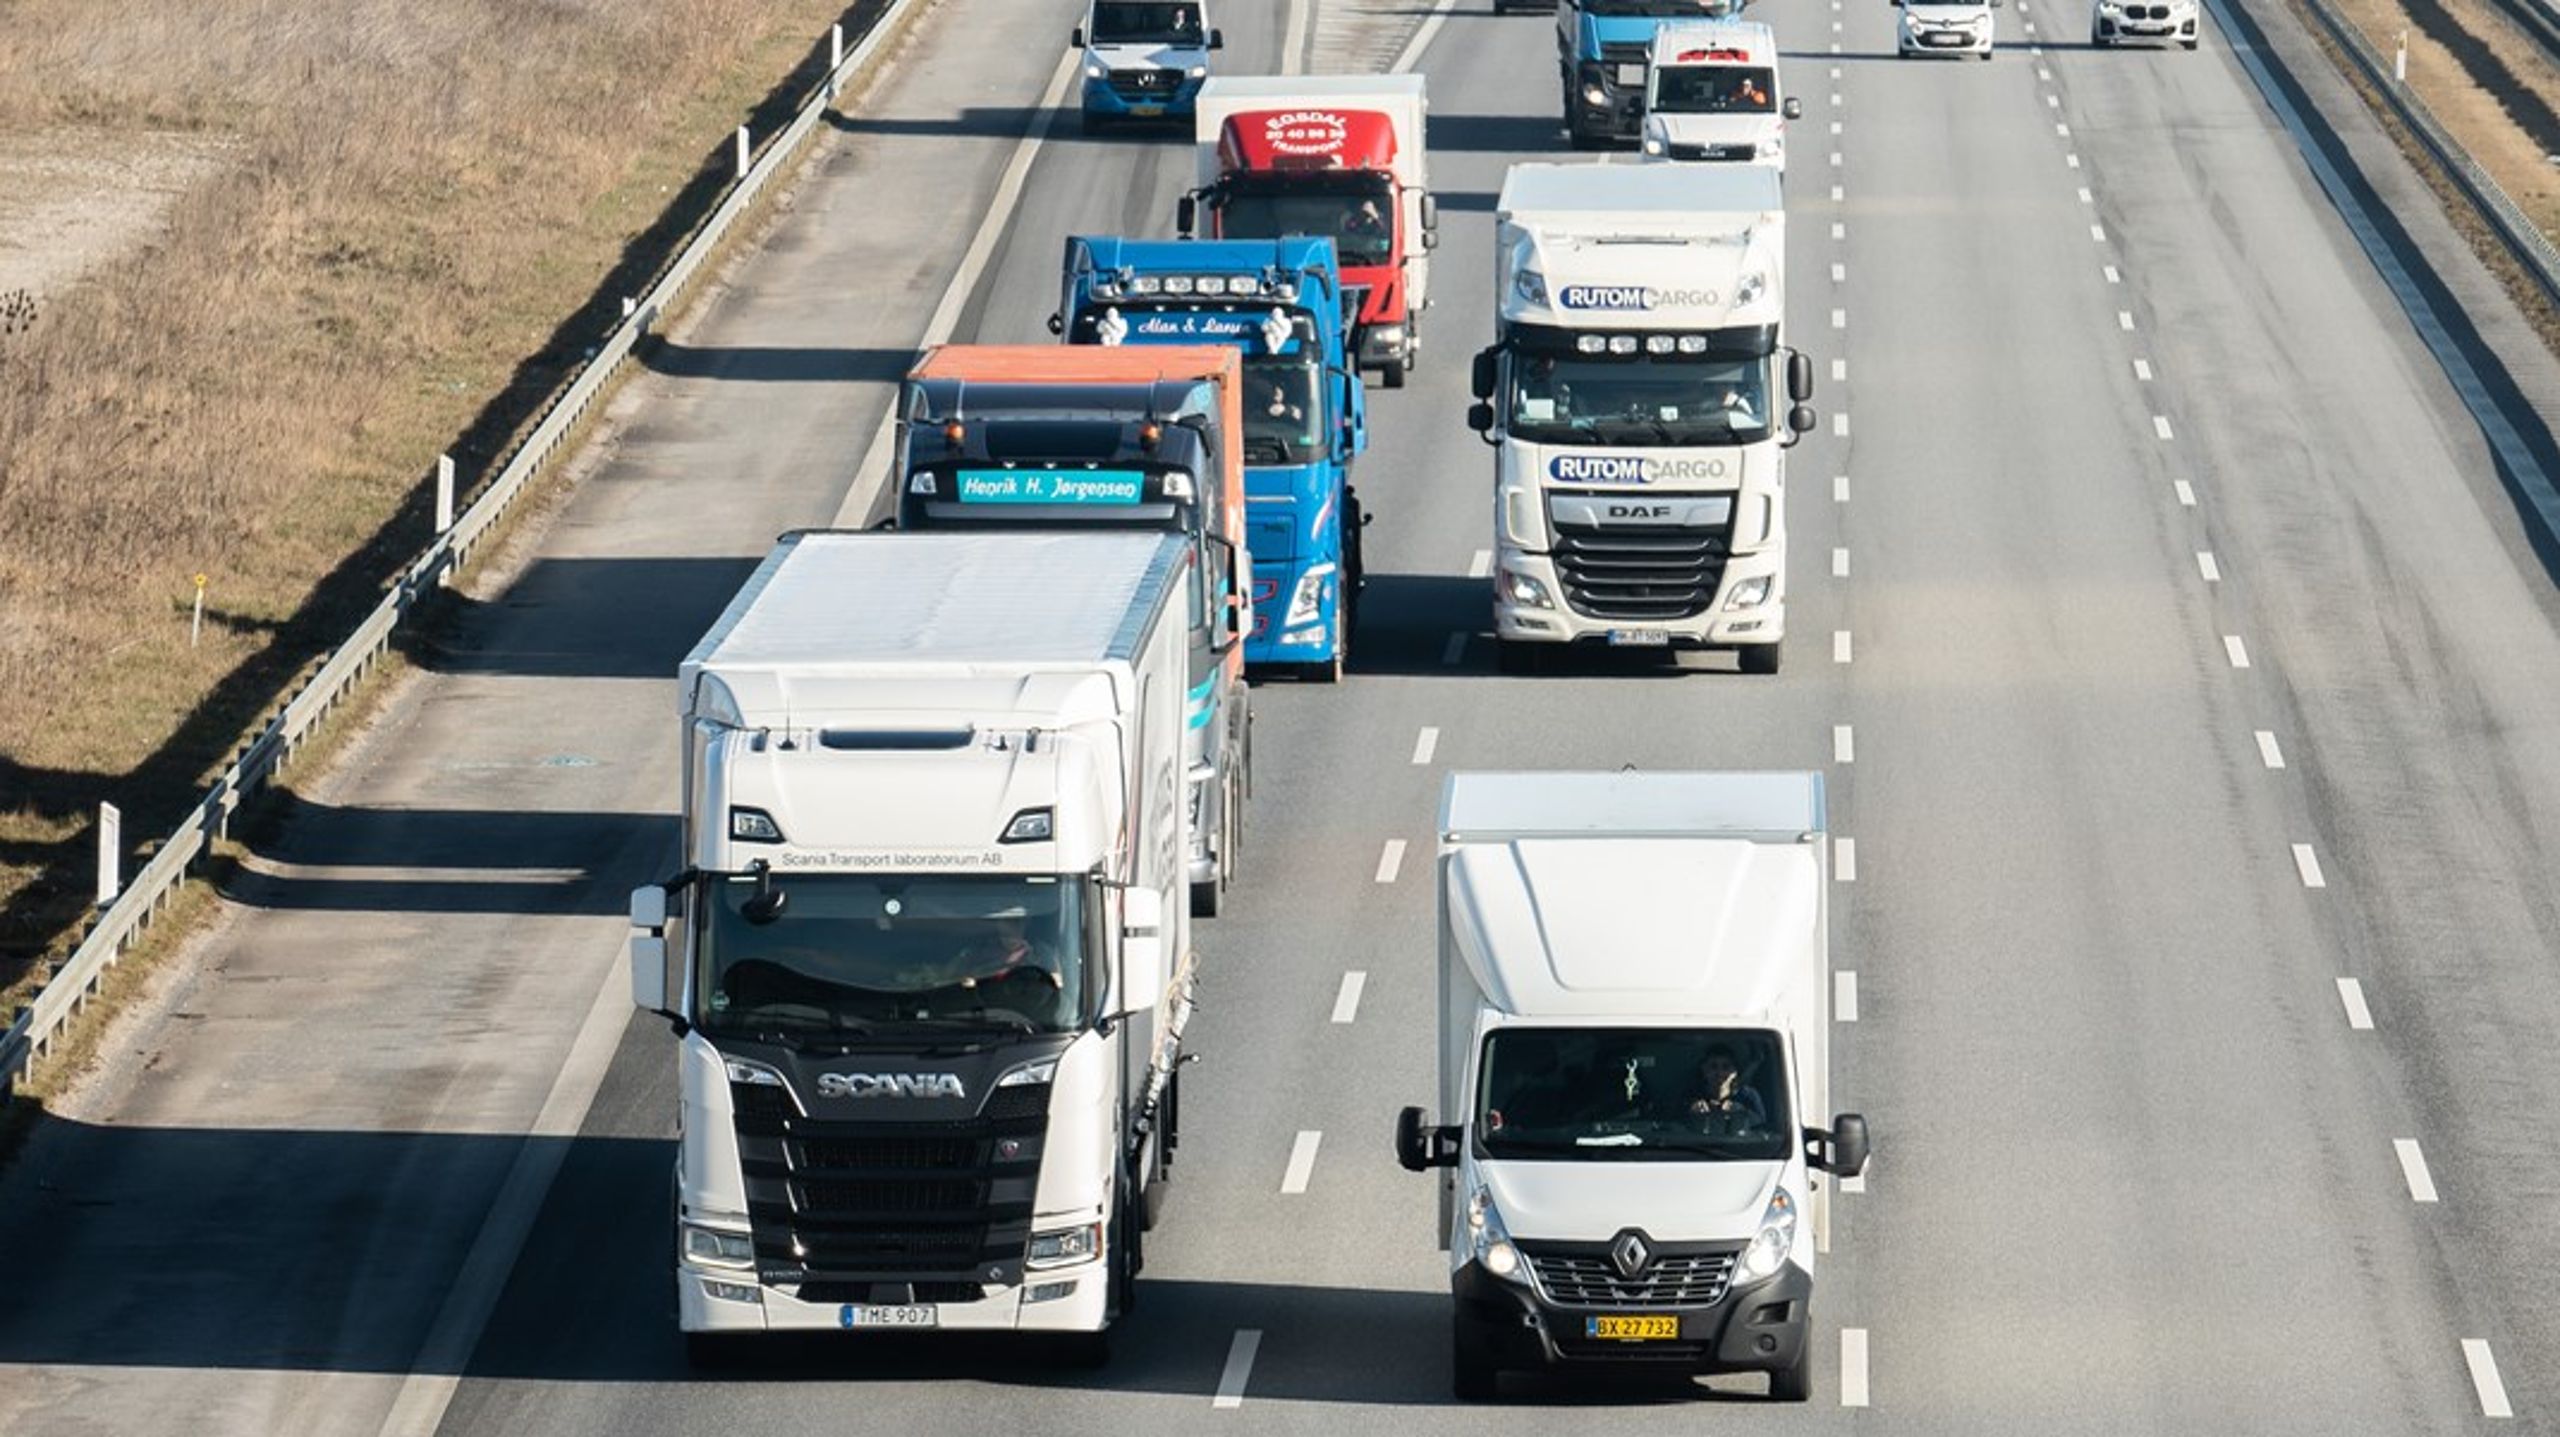 Grøn omstilling i vejgodstransporten afhænger af fælles, enkelte europæiske regler, der giver branchen mulighed for at udnytte potentialet og blive mere energieffektiv samt reducere transportens klima- og miljøpåvirkning med mere, skriver Stefan K. Schou. Arkivfoto.